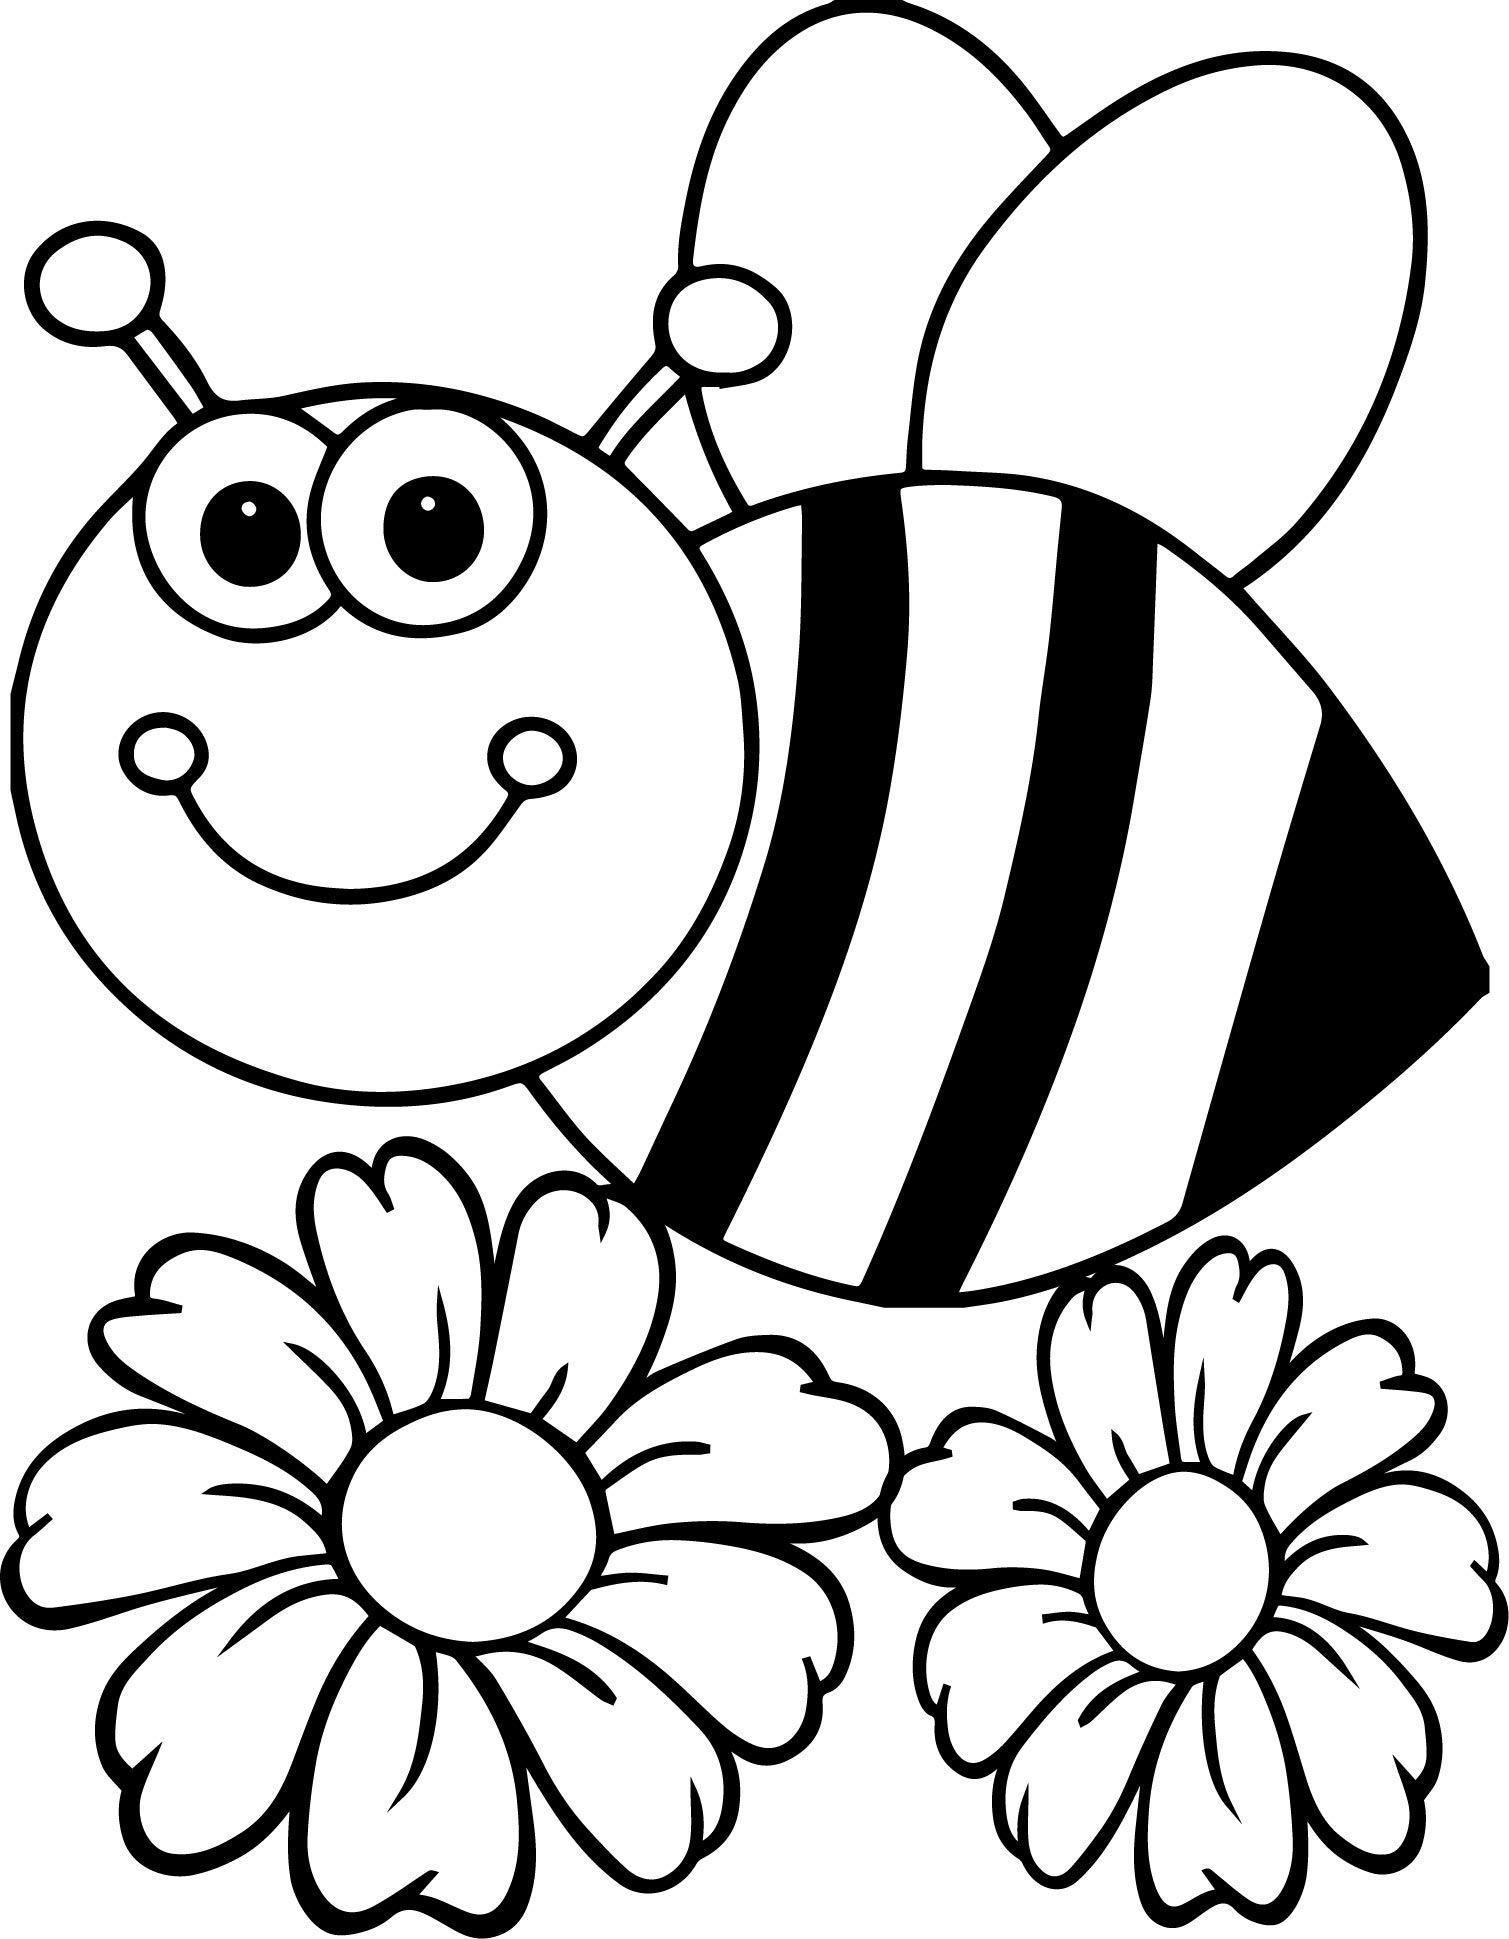 Tranh tô màu cho chú ong và hai bông hoa